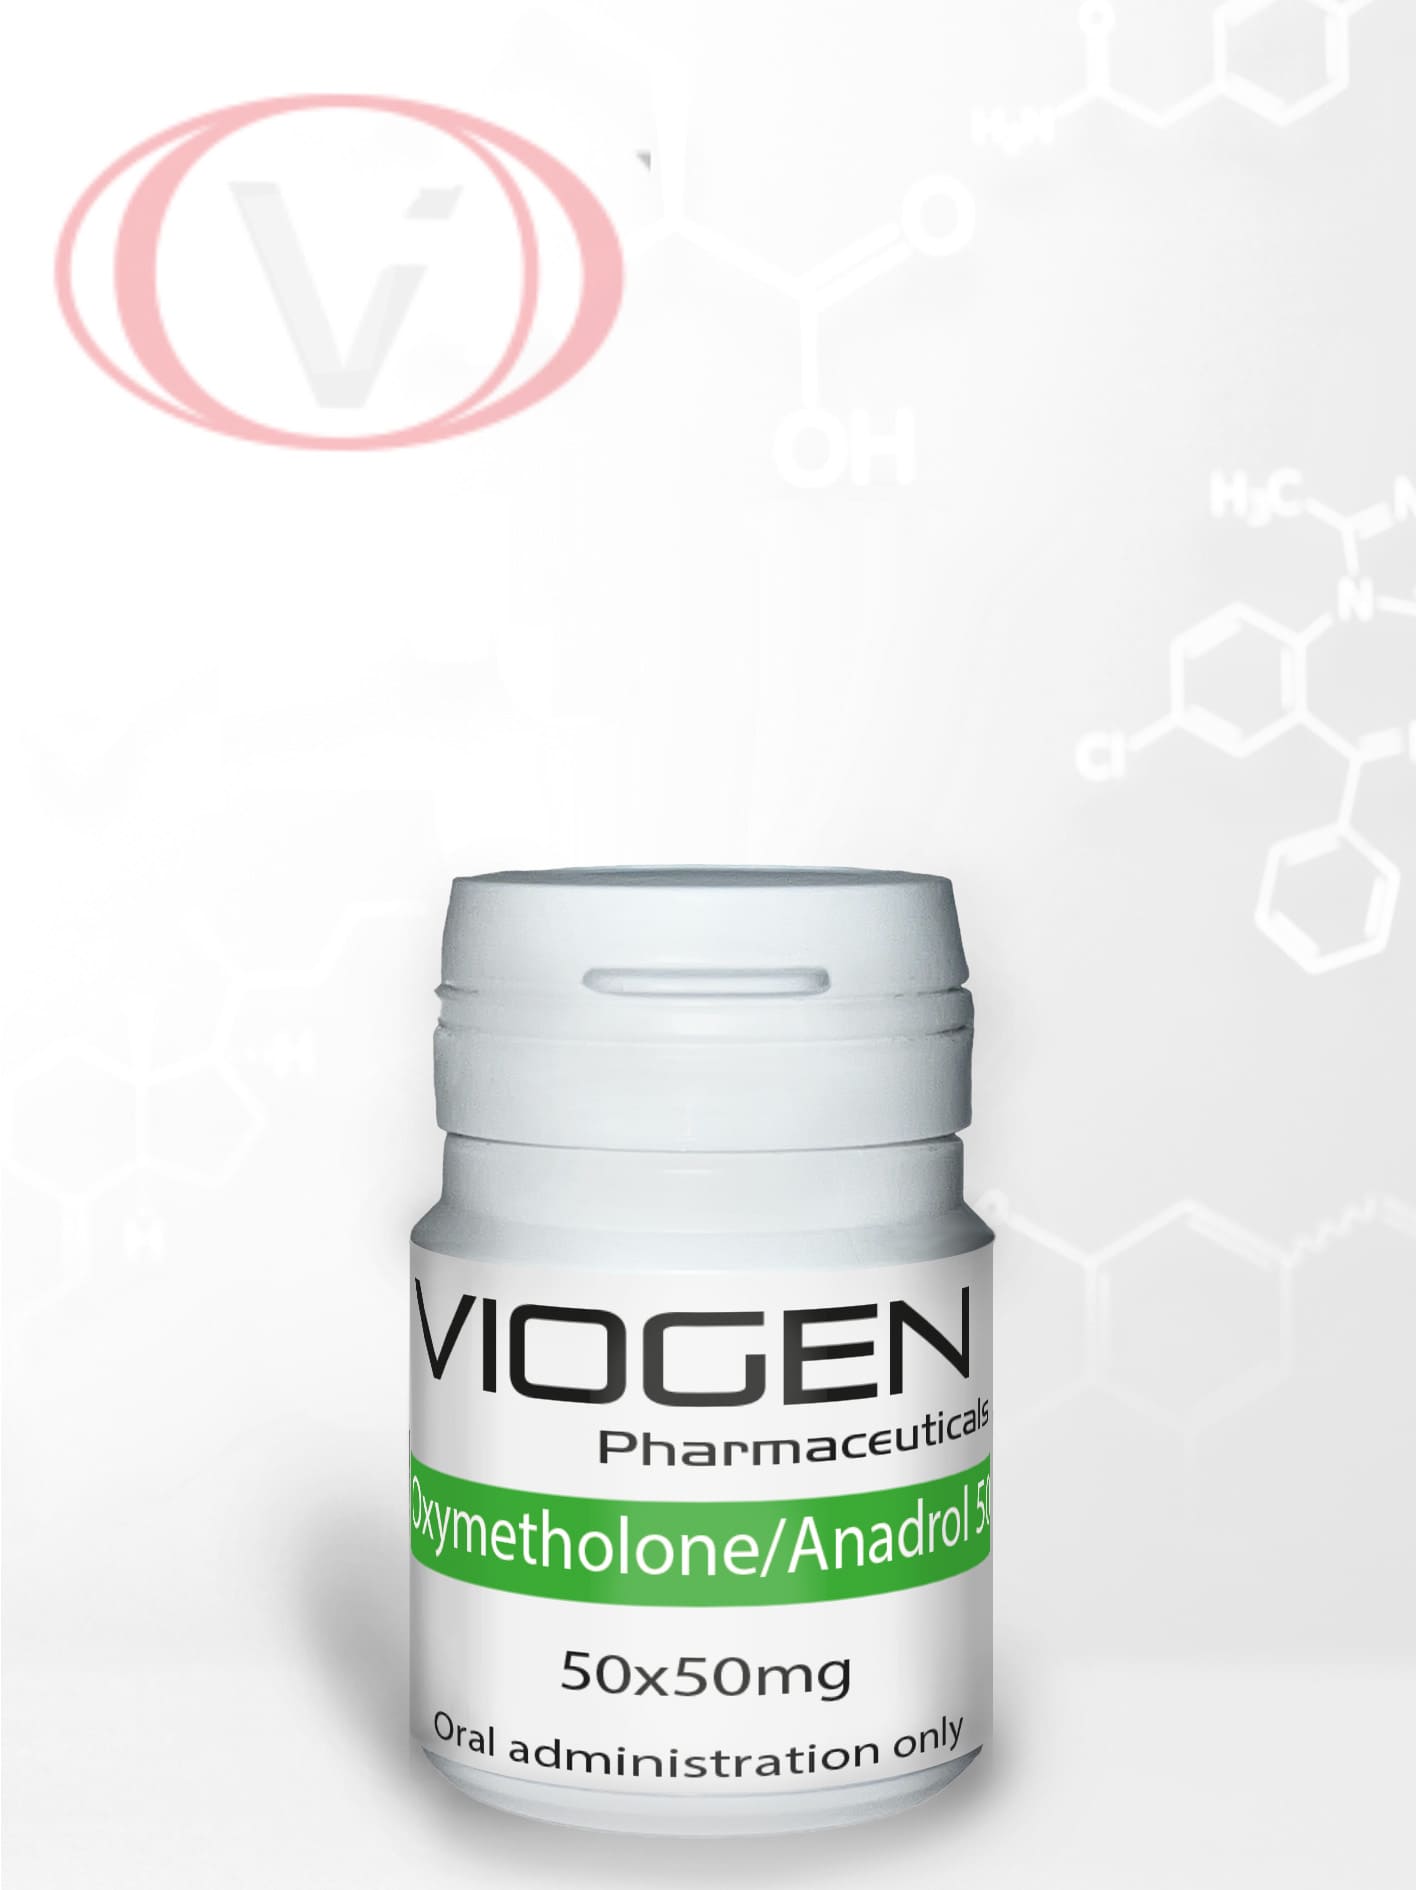 Oxymetholone Anadrol 50 Mg 50 Tablets Viogen Pharma